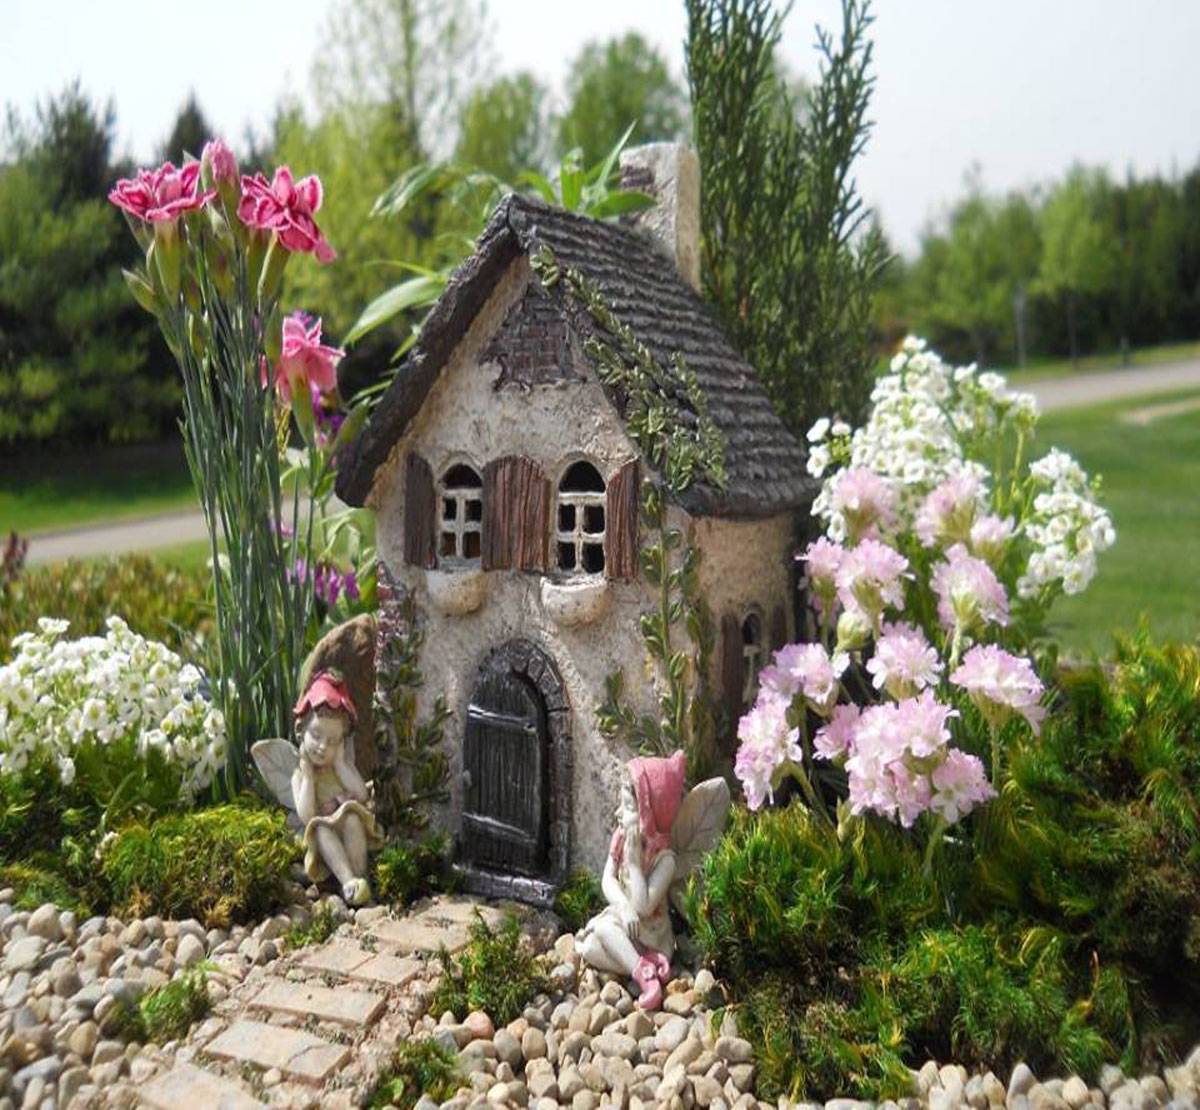 Сказочная жизнь в собственном саду при помощи декоративных домиков